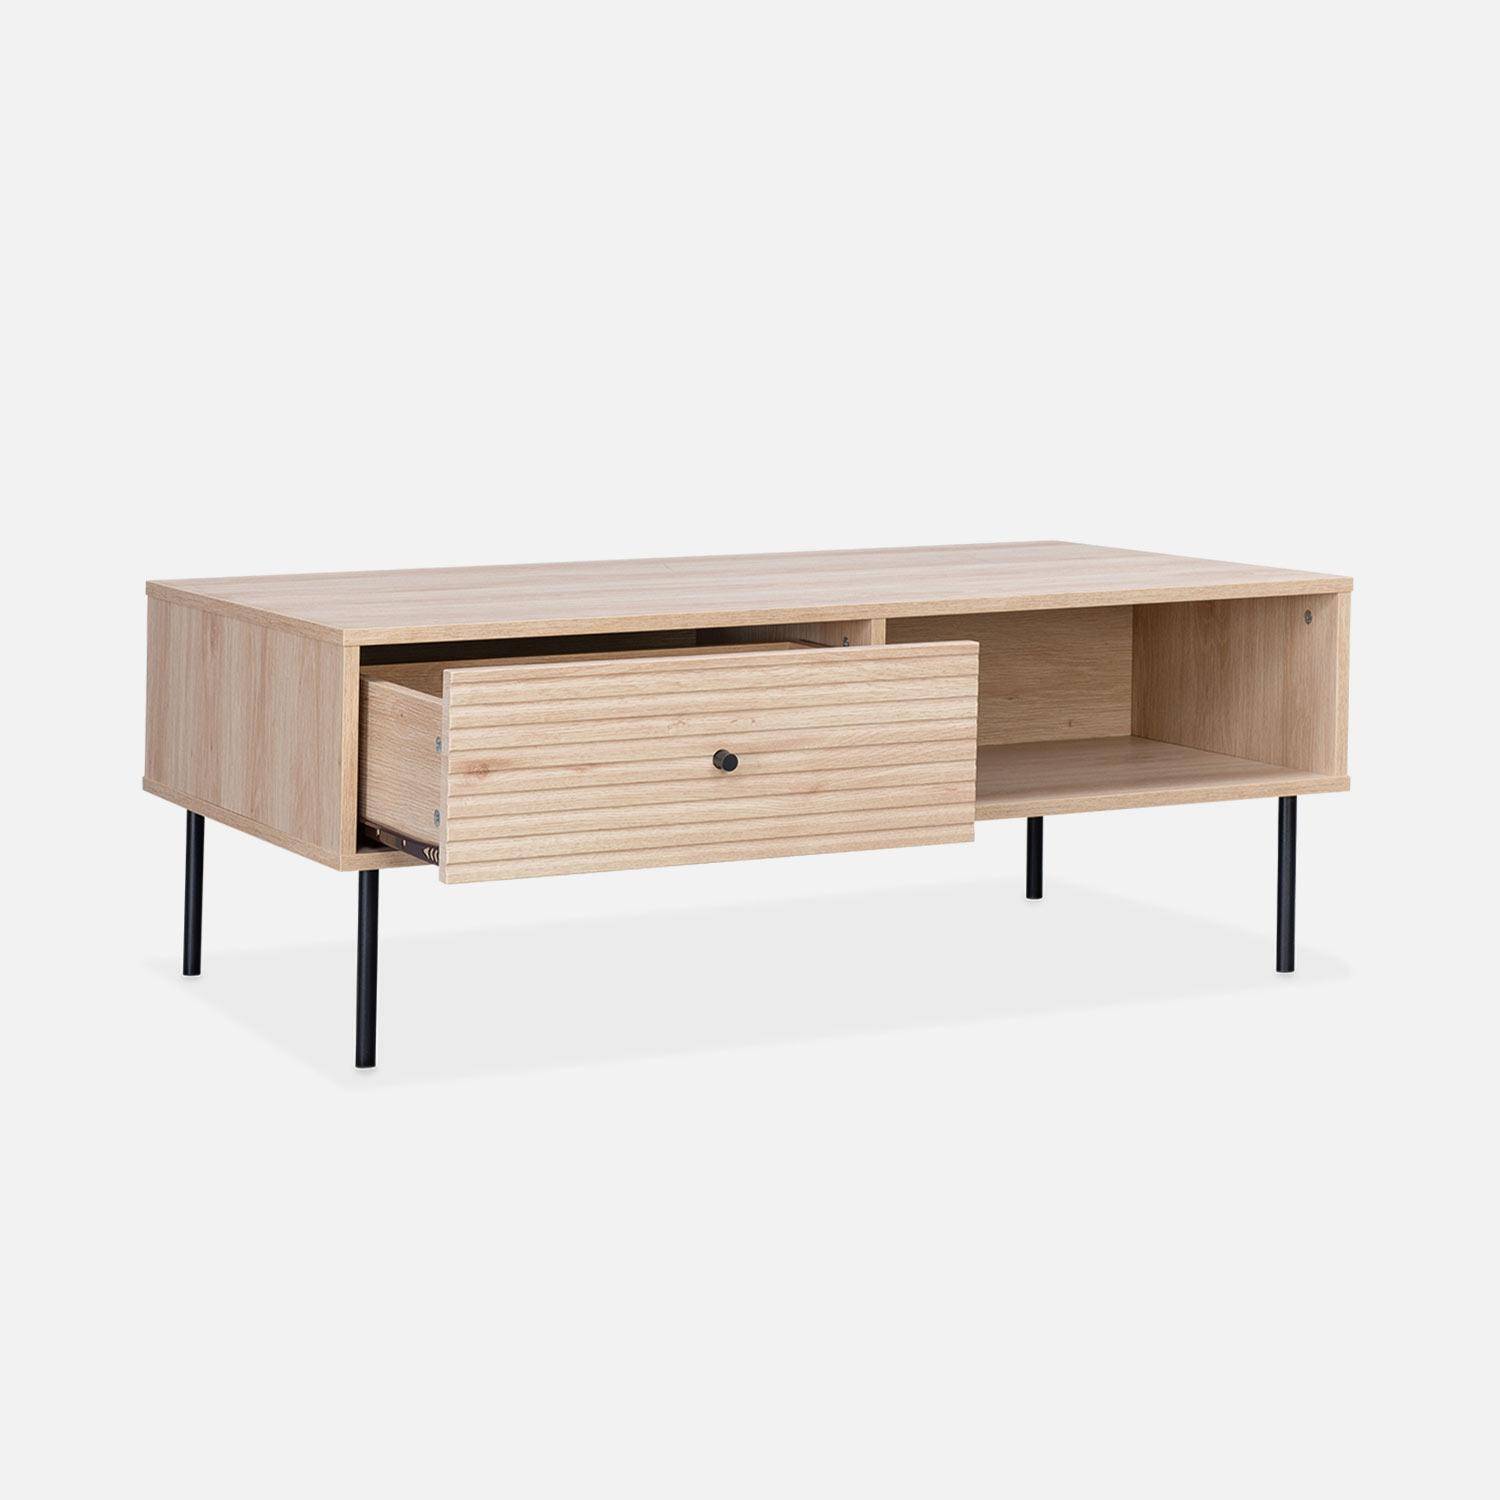 Tavolino, Braga, un cassetto, due vani portaoggetti, L 110 x L 59 x H 41 cm Photo6